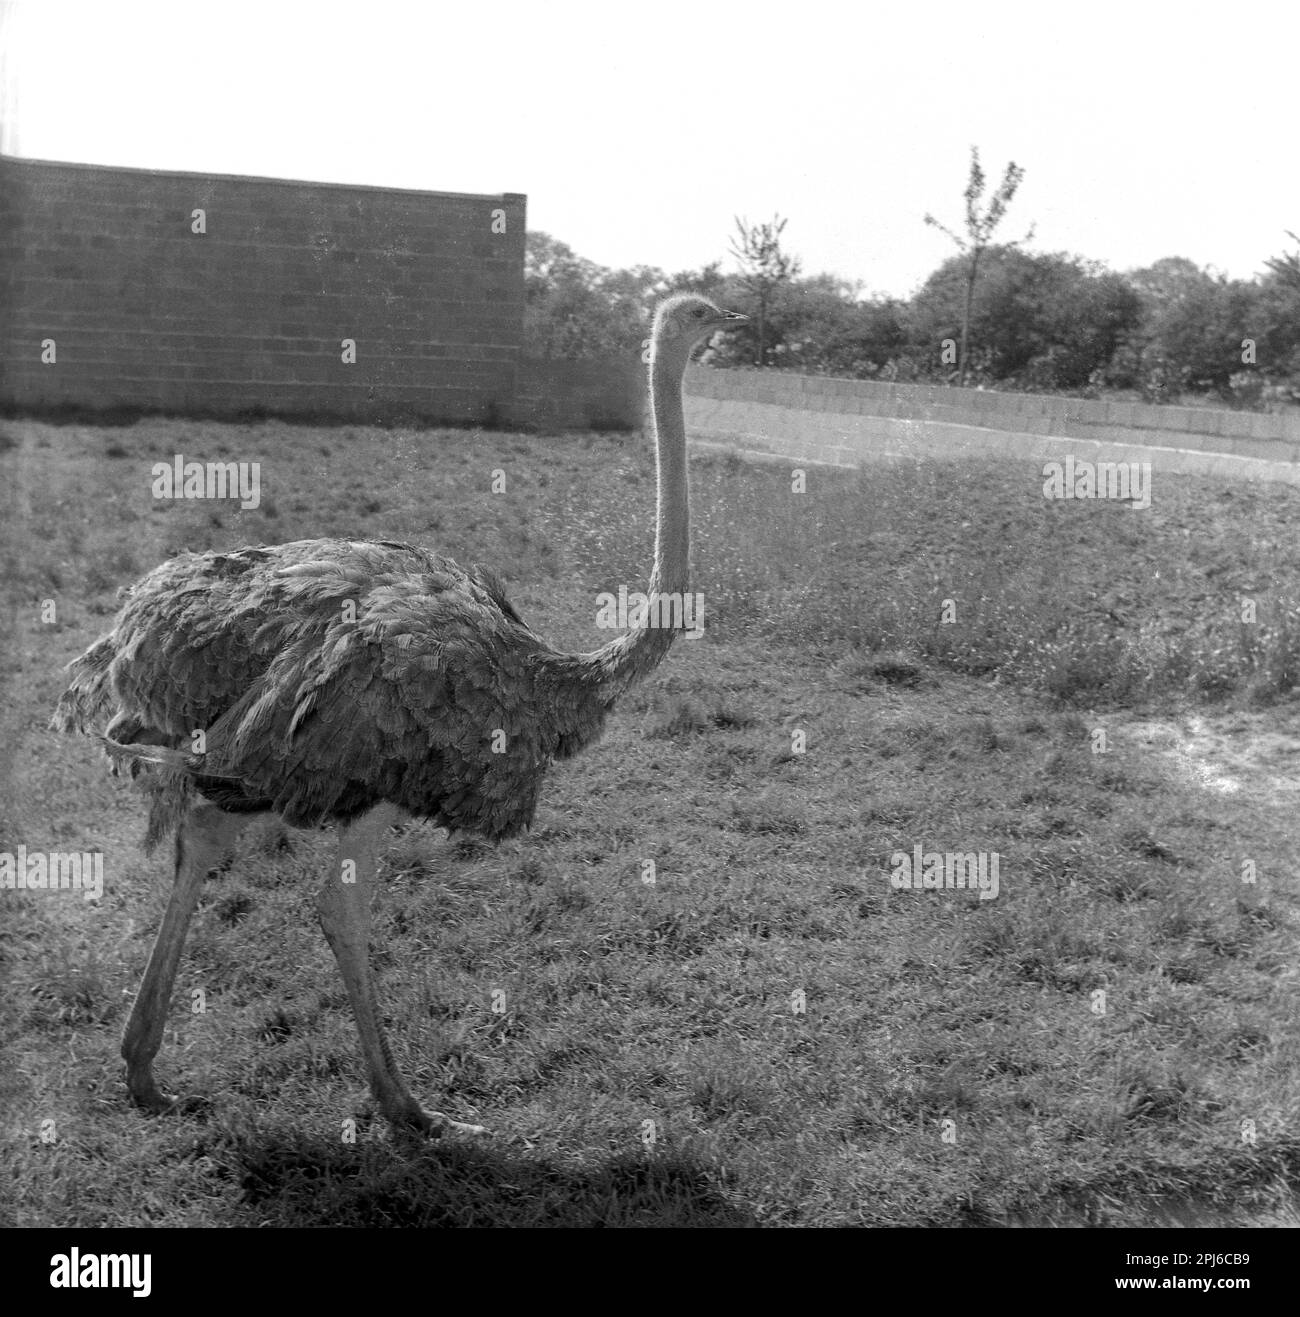 1950s, storico, uno struzzo nel suo recinto, Chester Zoo, Inghilterra, Regno Unito. Un grande uccello senza flightless, struzzi hanno una capacità di funzionare a 70km/h e sono gli uccelli più veloci sulla terra. Foto Stock